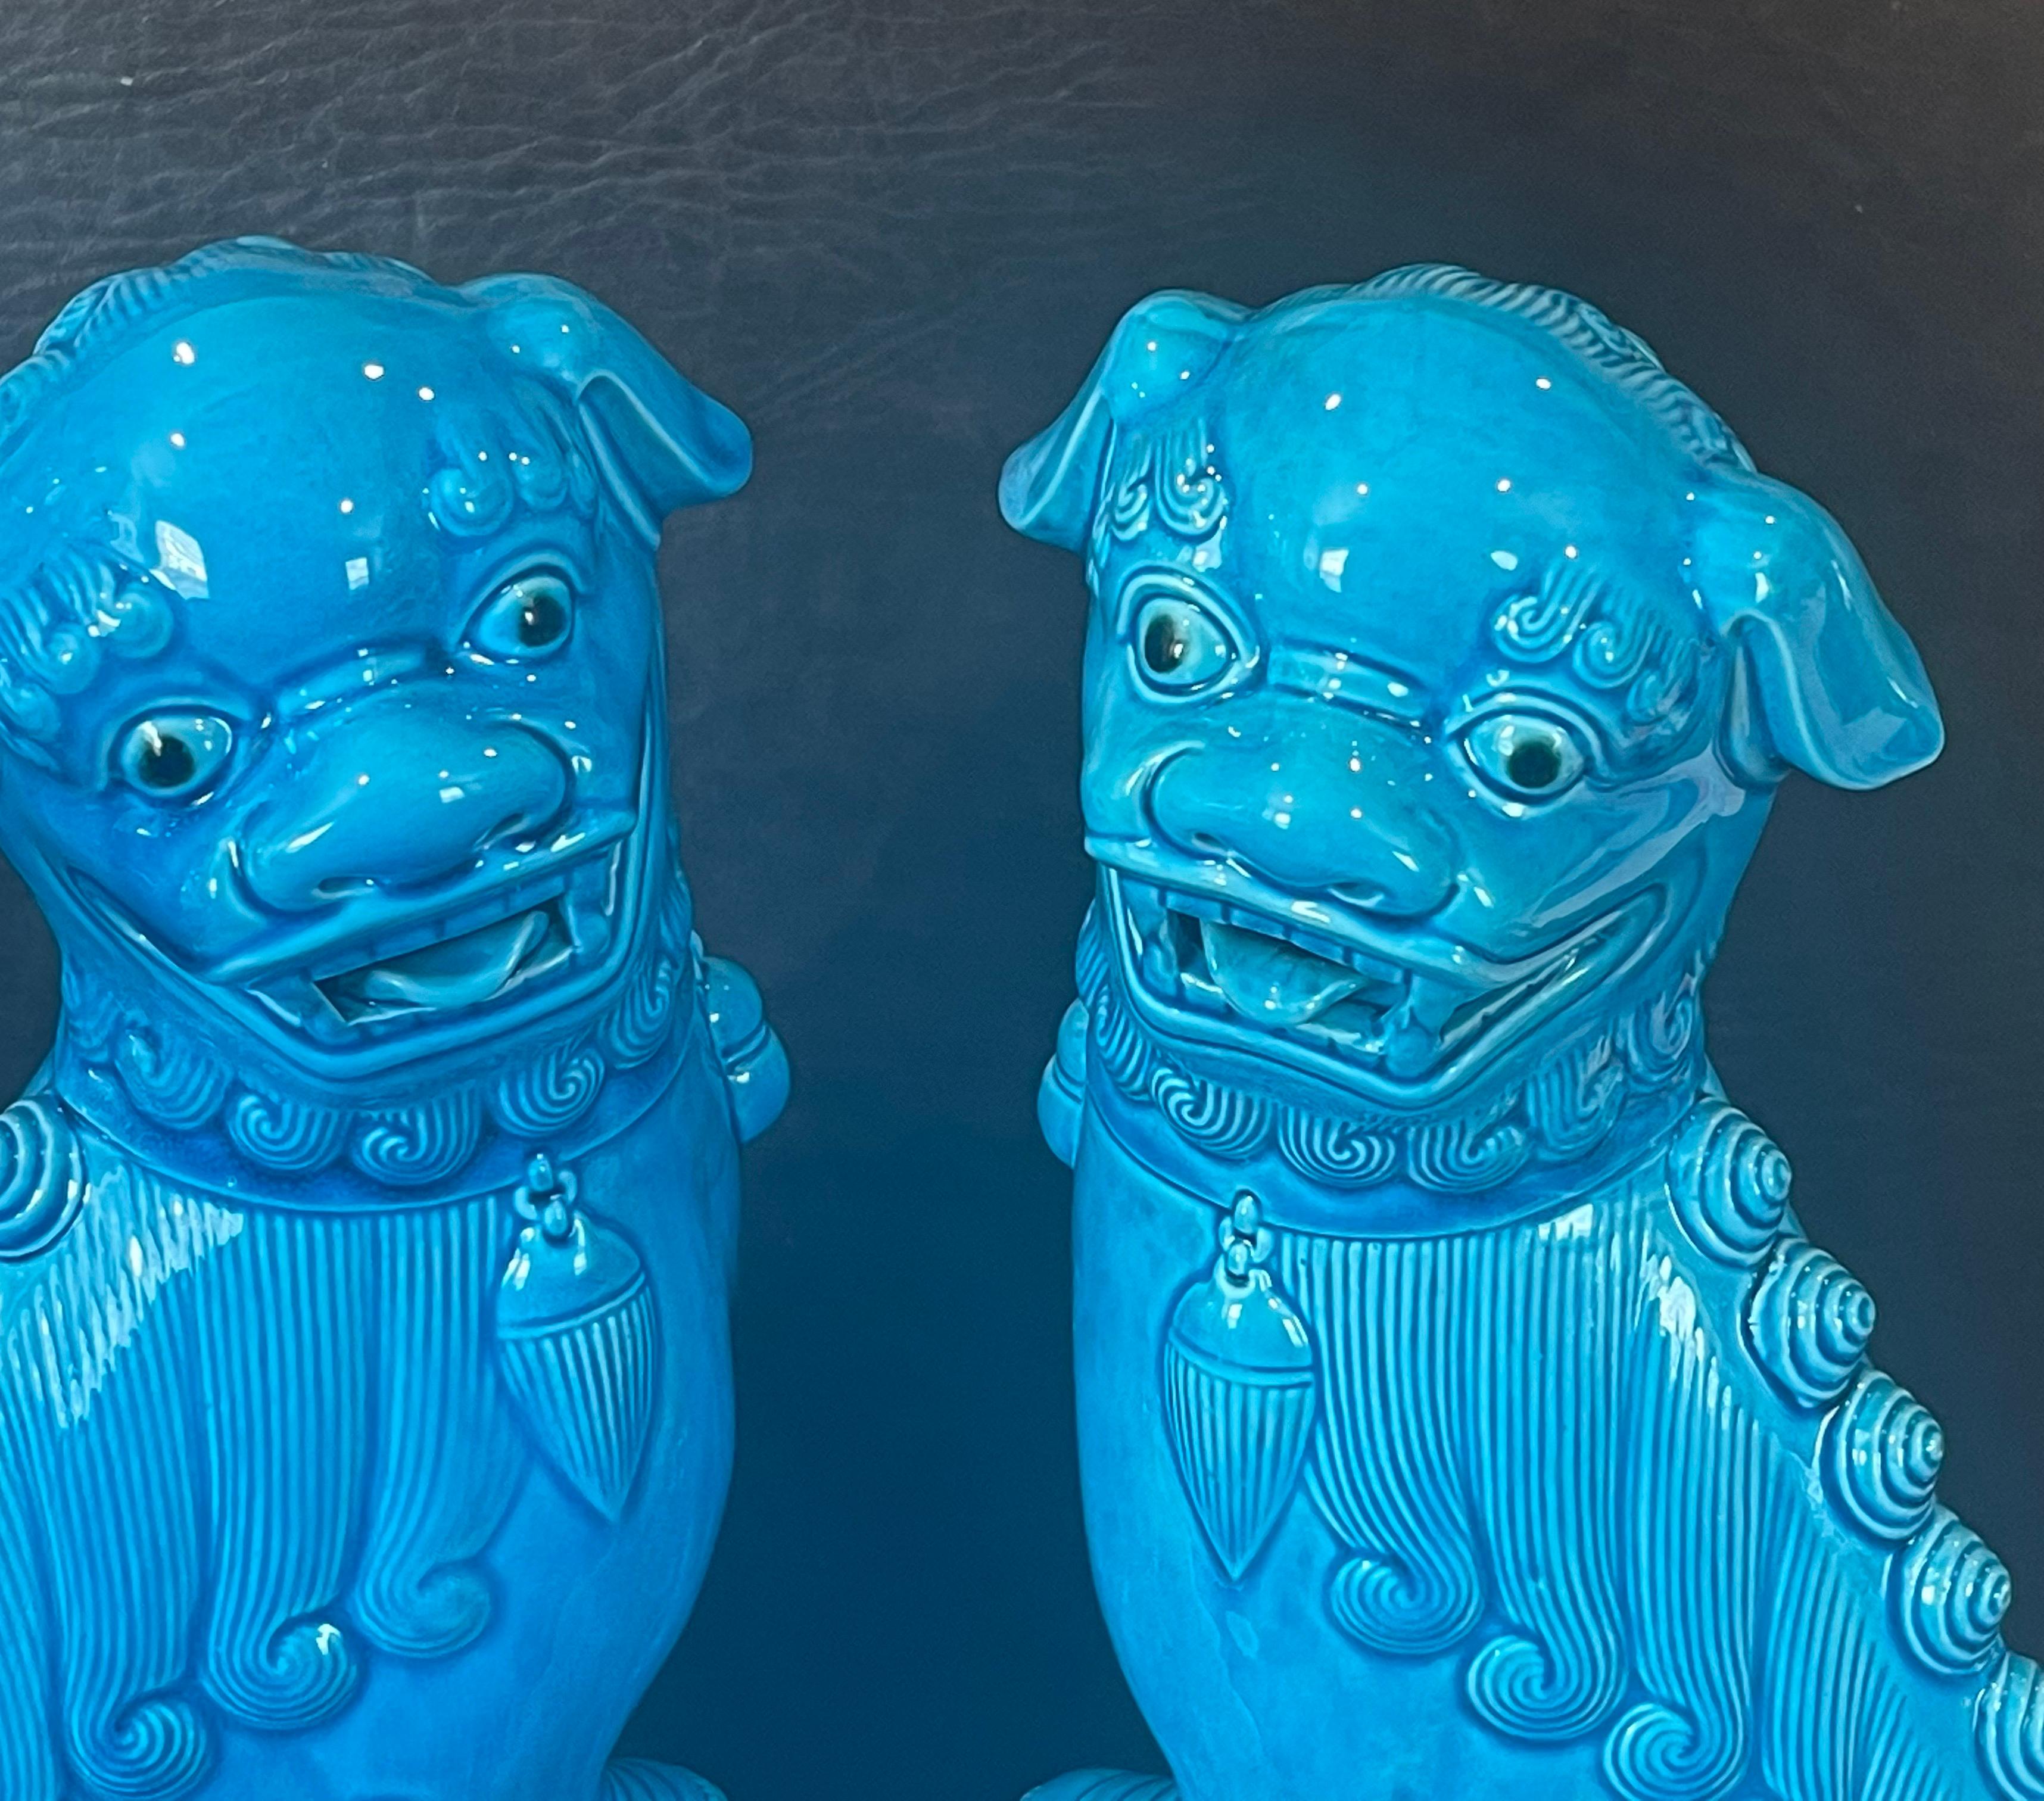 Pair of Massive Mid-Century Turquoise Blue Ceramic Foo Dog Sculptures 1